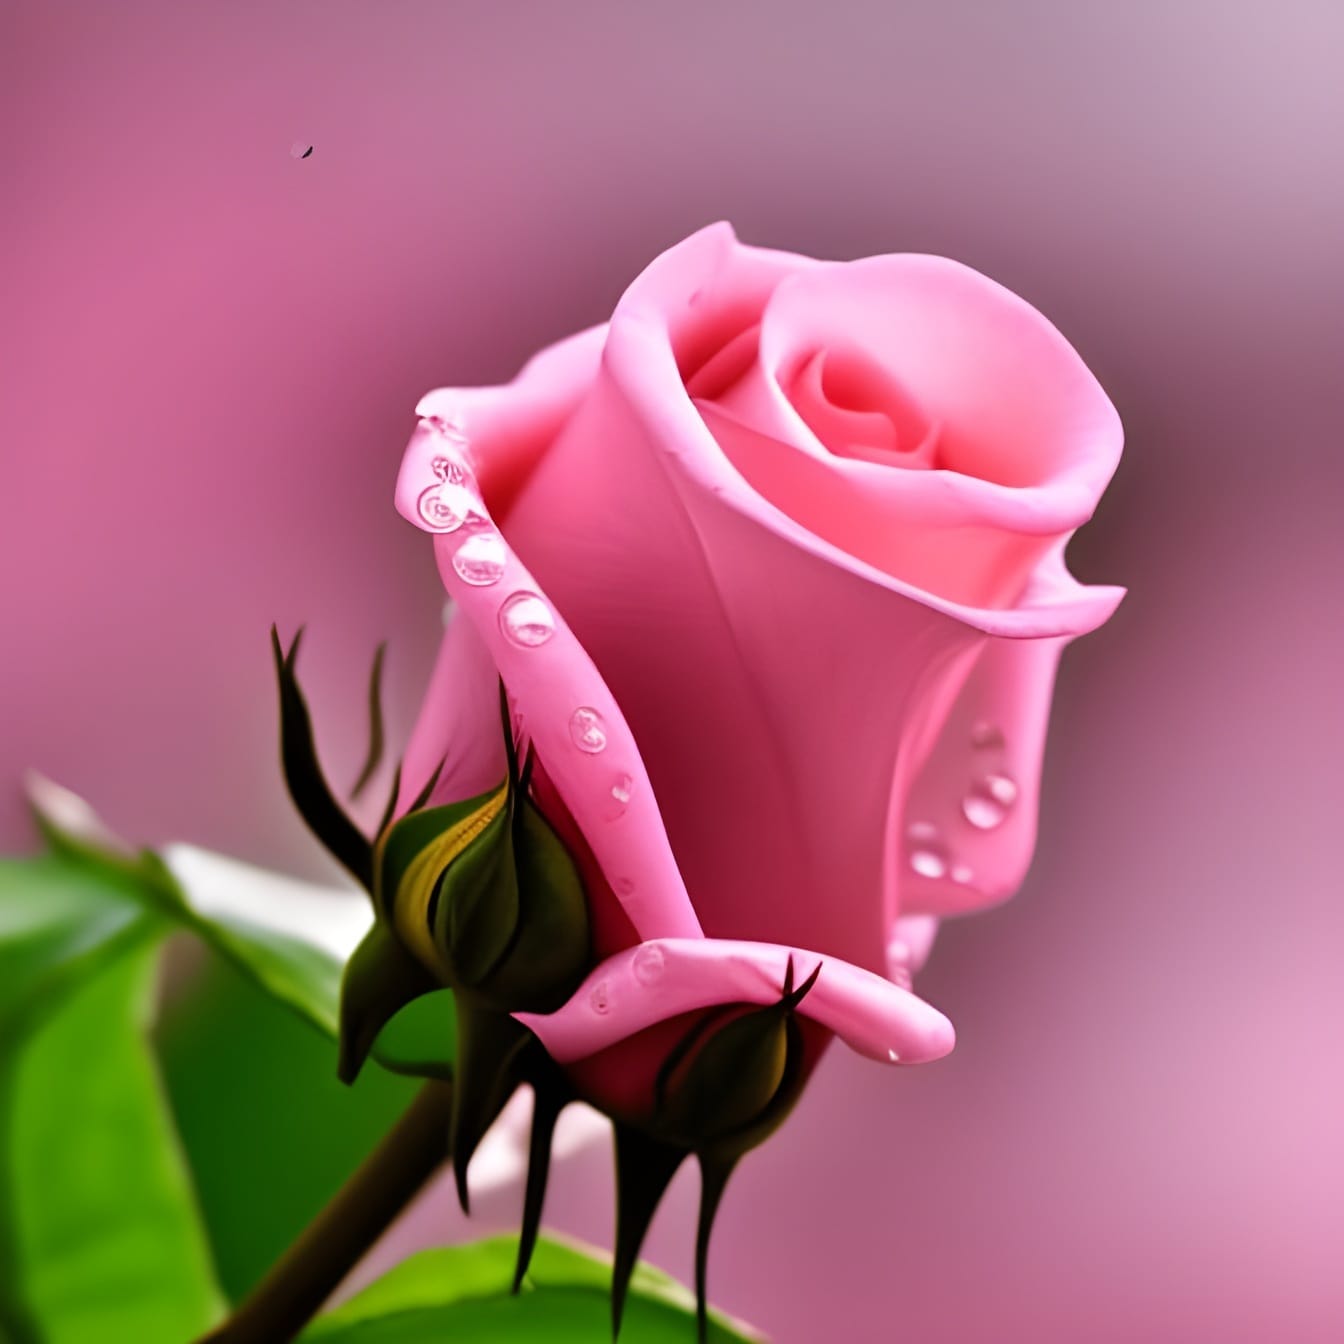 꽃잎에 물방울이 있는 핑크 장미 꽃봉오리 클로즈업 – 인공 지능 예술